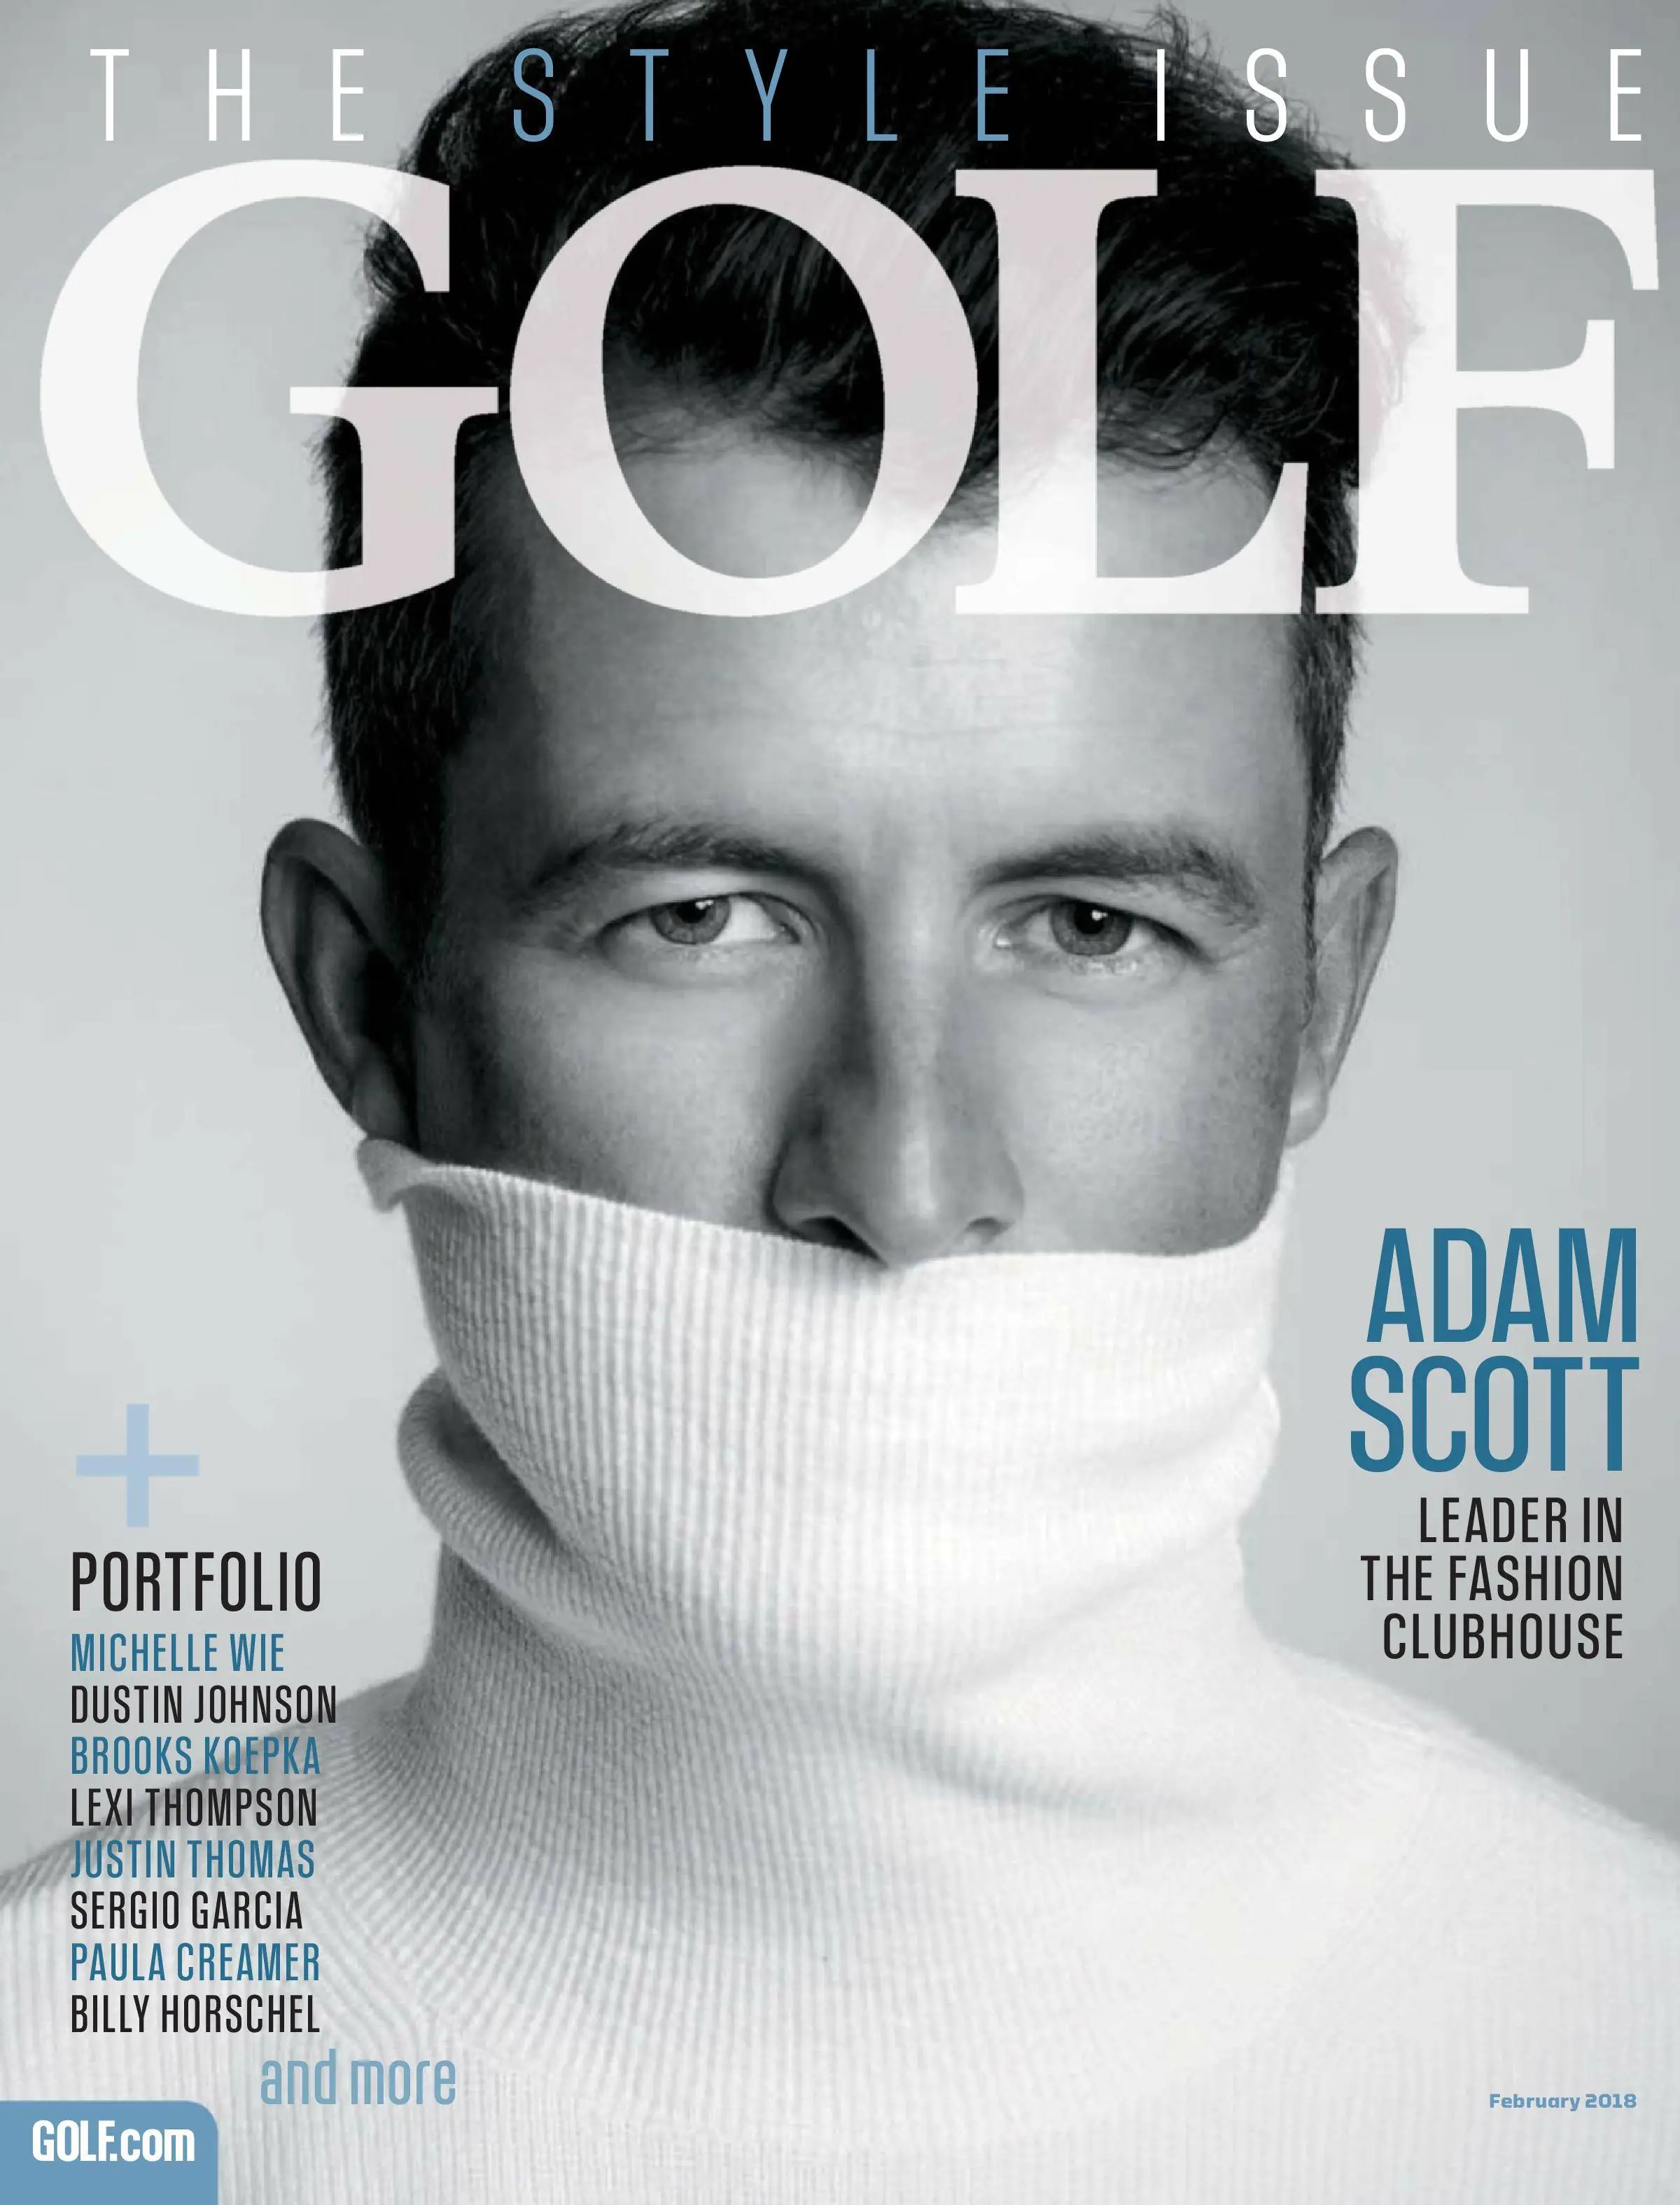 Us magazine. Golf Magazine. Журнал Adam. Обложки журнала для гольфа. Д стиль журнал.